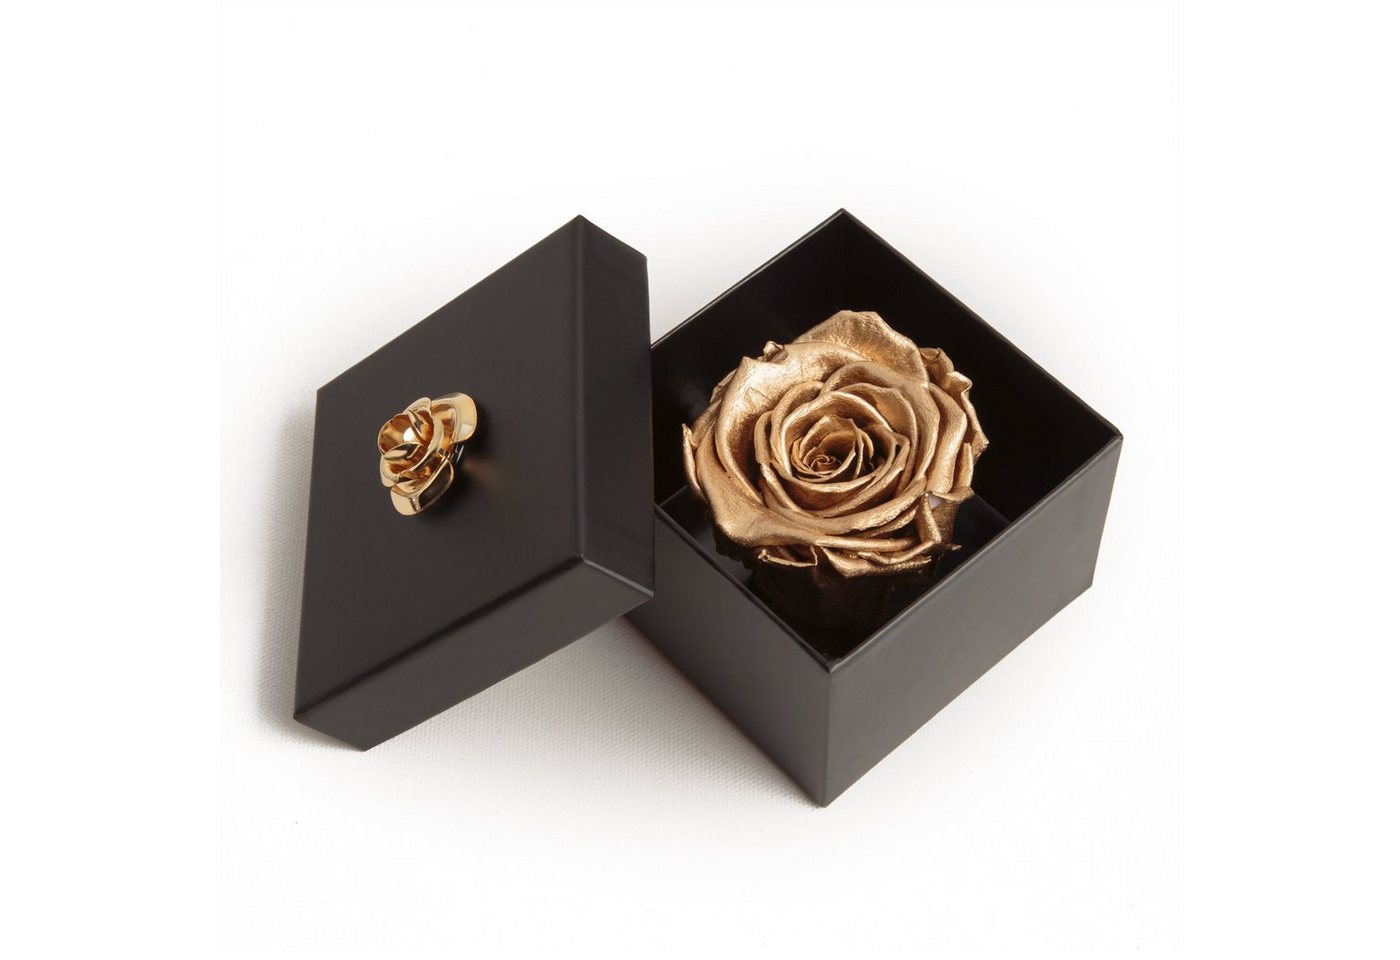 Kunstblume 1 Infinity Rose haltbar 3 Jahre Rose in Box mit Blumendeckel Rose, ROSEMARIE SCHULZ Heidelberg, Höhe 6.5 cm, Echte Rose haltbar bis zu 3 Jahre von ROSEMARIE SCHULZ Heidelberg